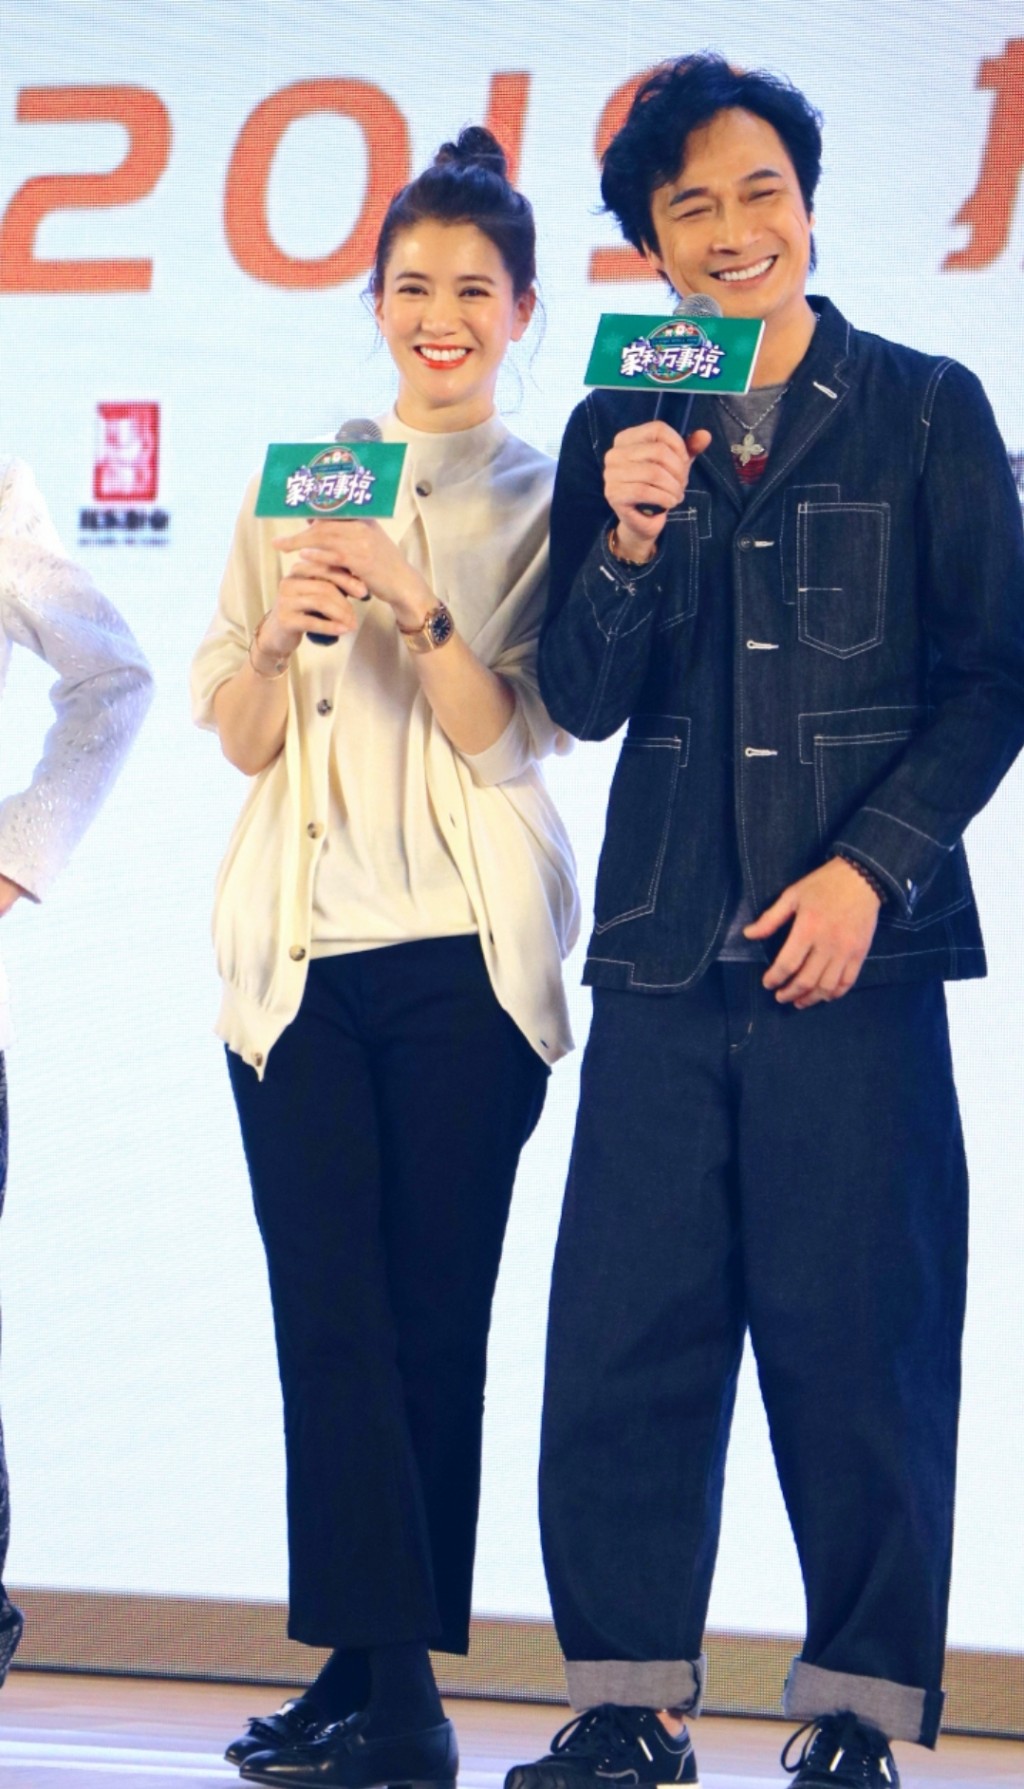 袁詠儀與吳鎮宇曾到北京出席電影《家和萬事驚》記者會。